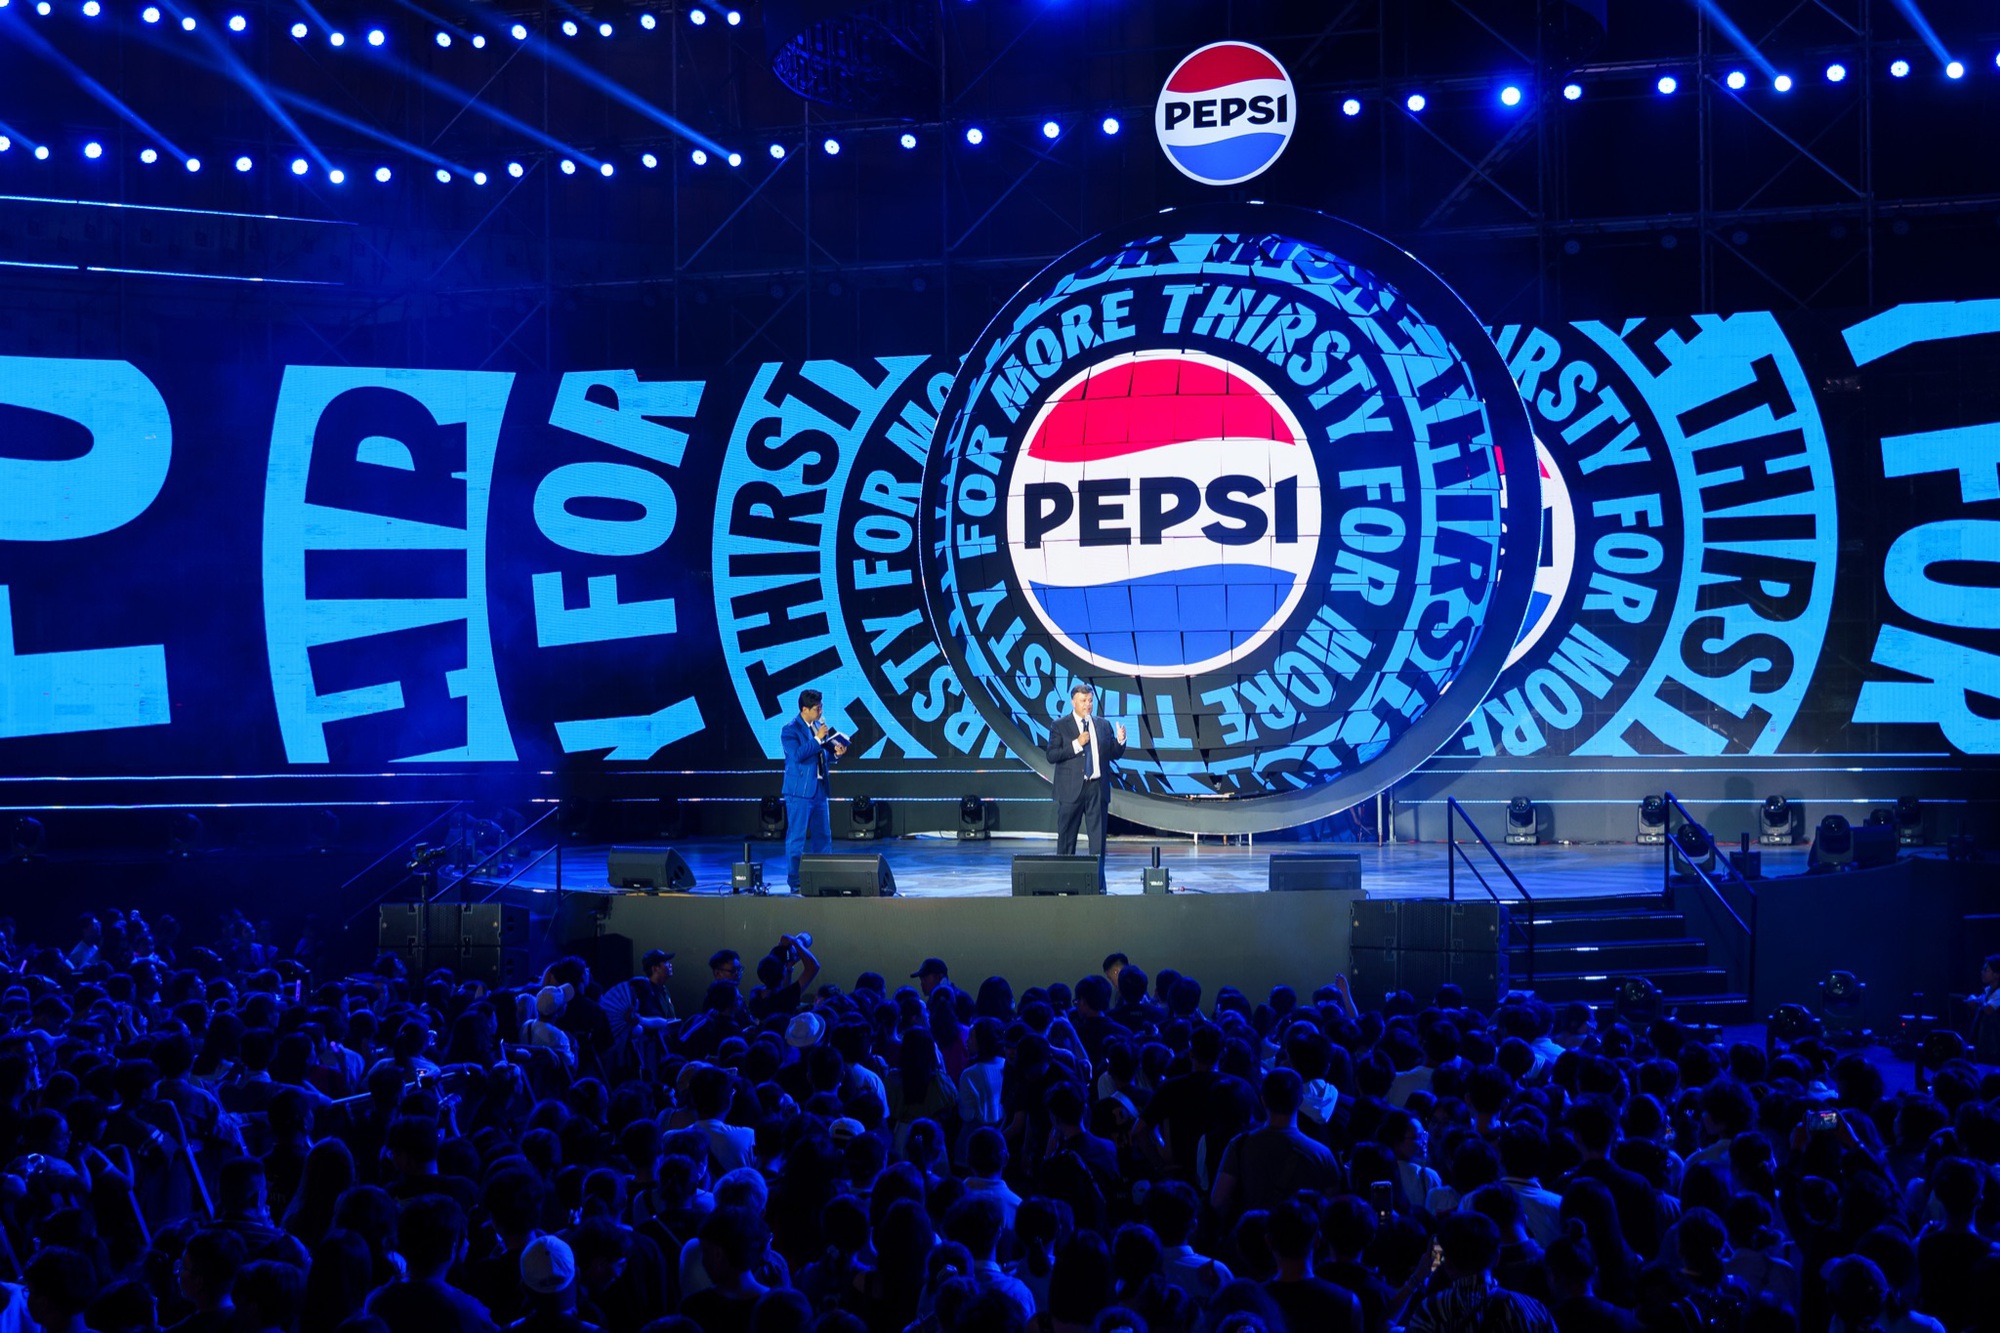 Pepsi đánh dấu kỷ nguyên mới với chuỗi sự kiện bùng nổ đúng chất “Đã cơn khát, thỏa đam mê” - Ảnh 1.